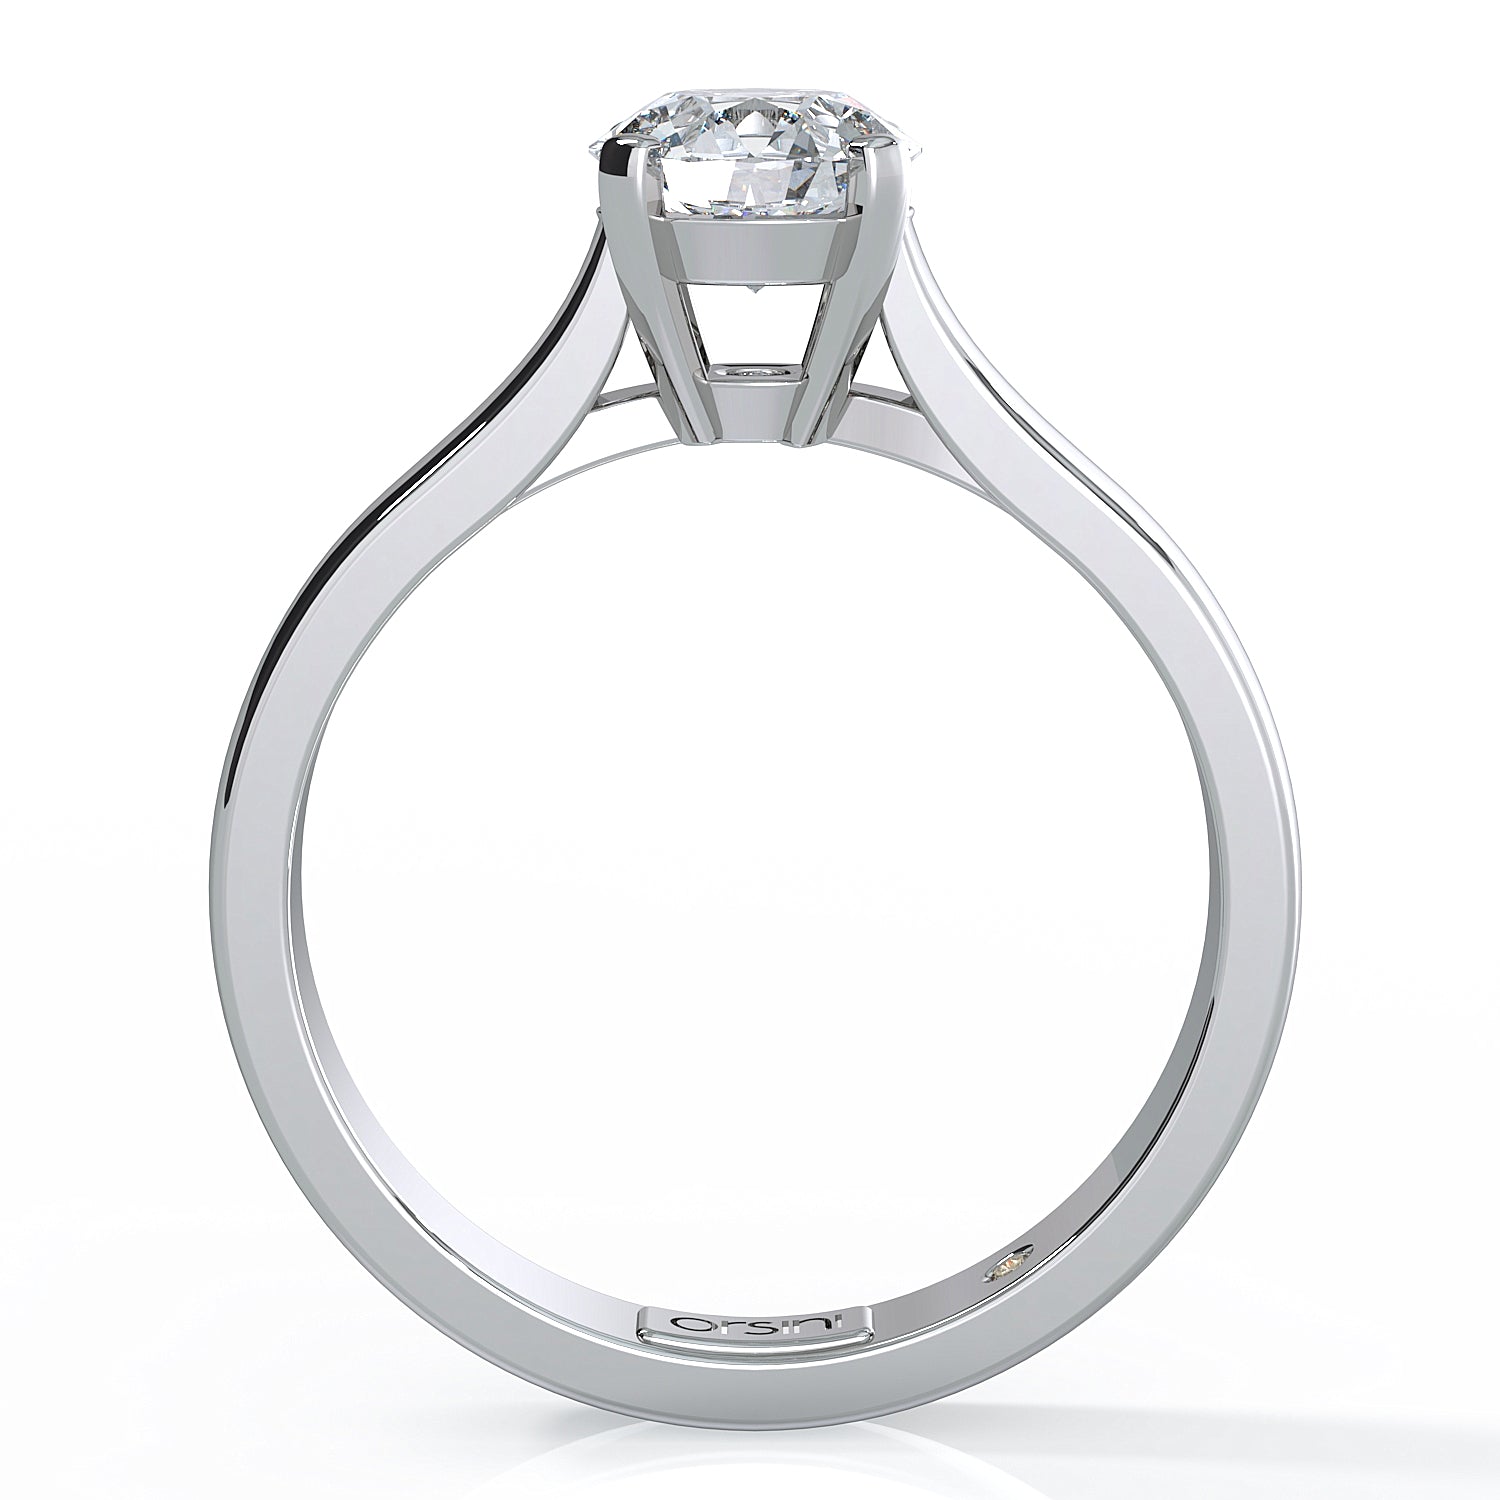 Orsini Classico Engagement Ring